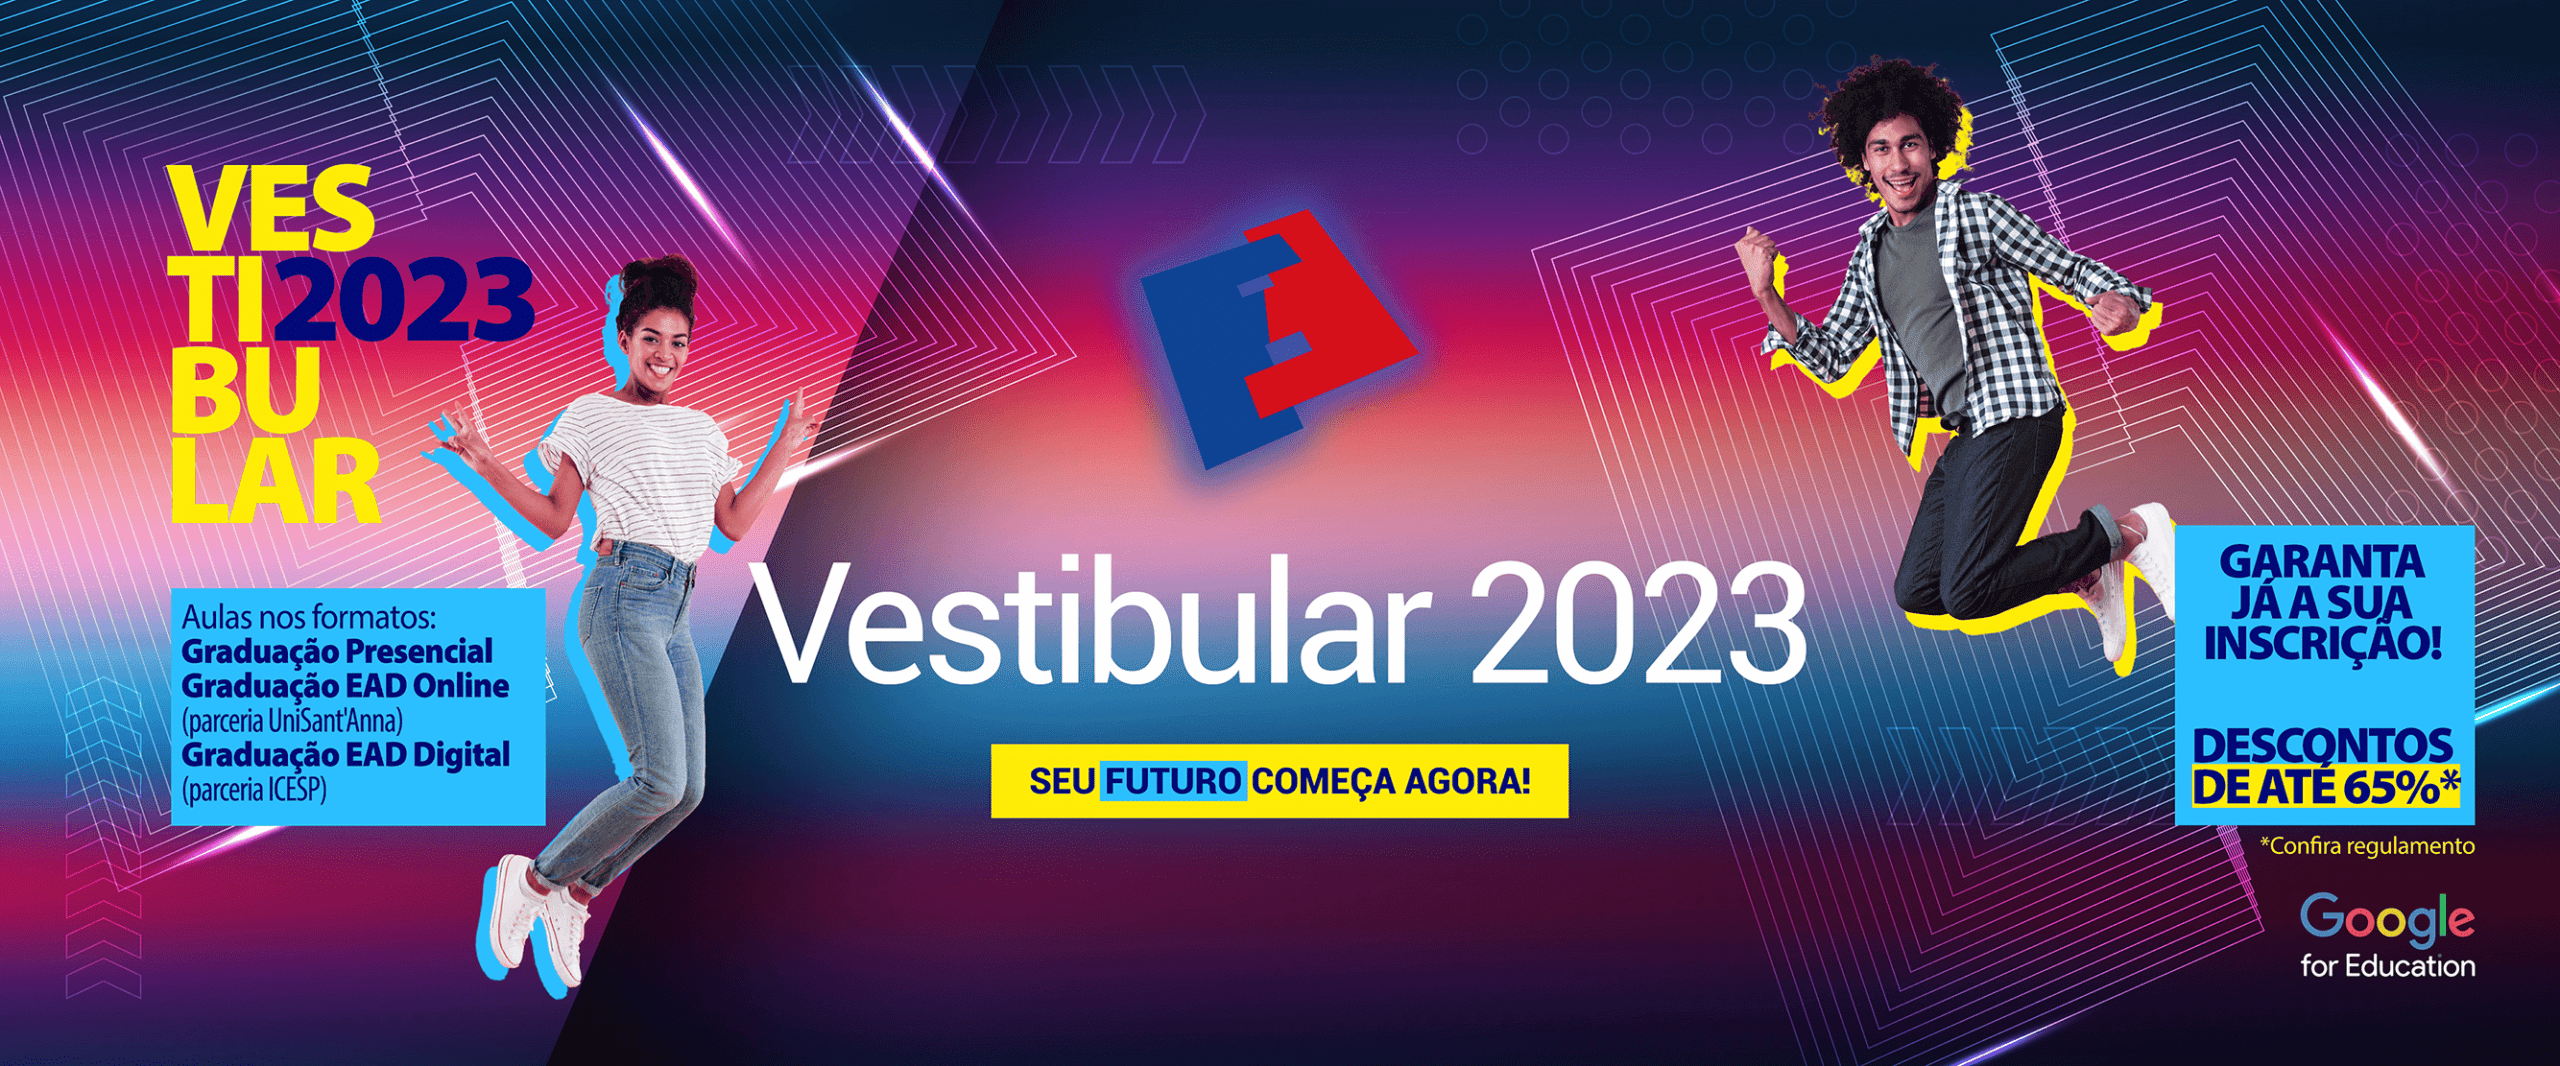 Banner_Vestibular 2023_FUNORTE-JANAUBA